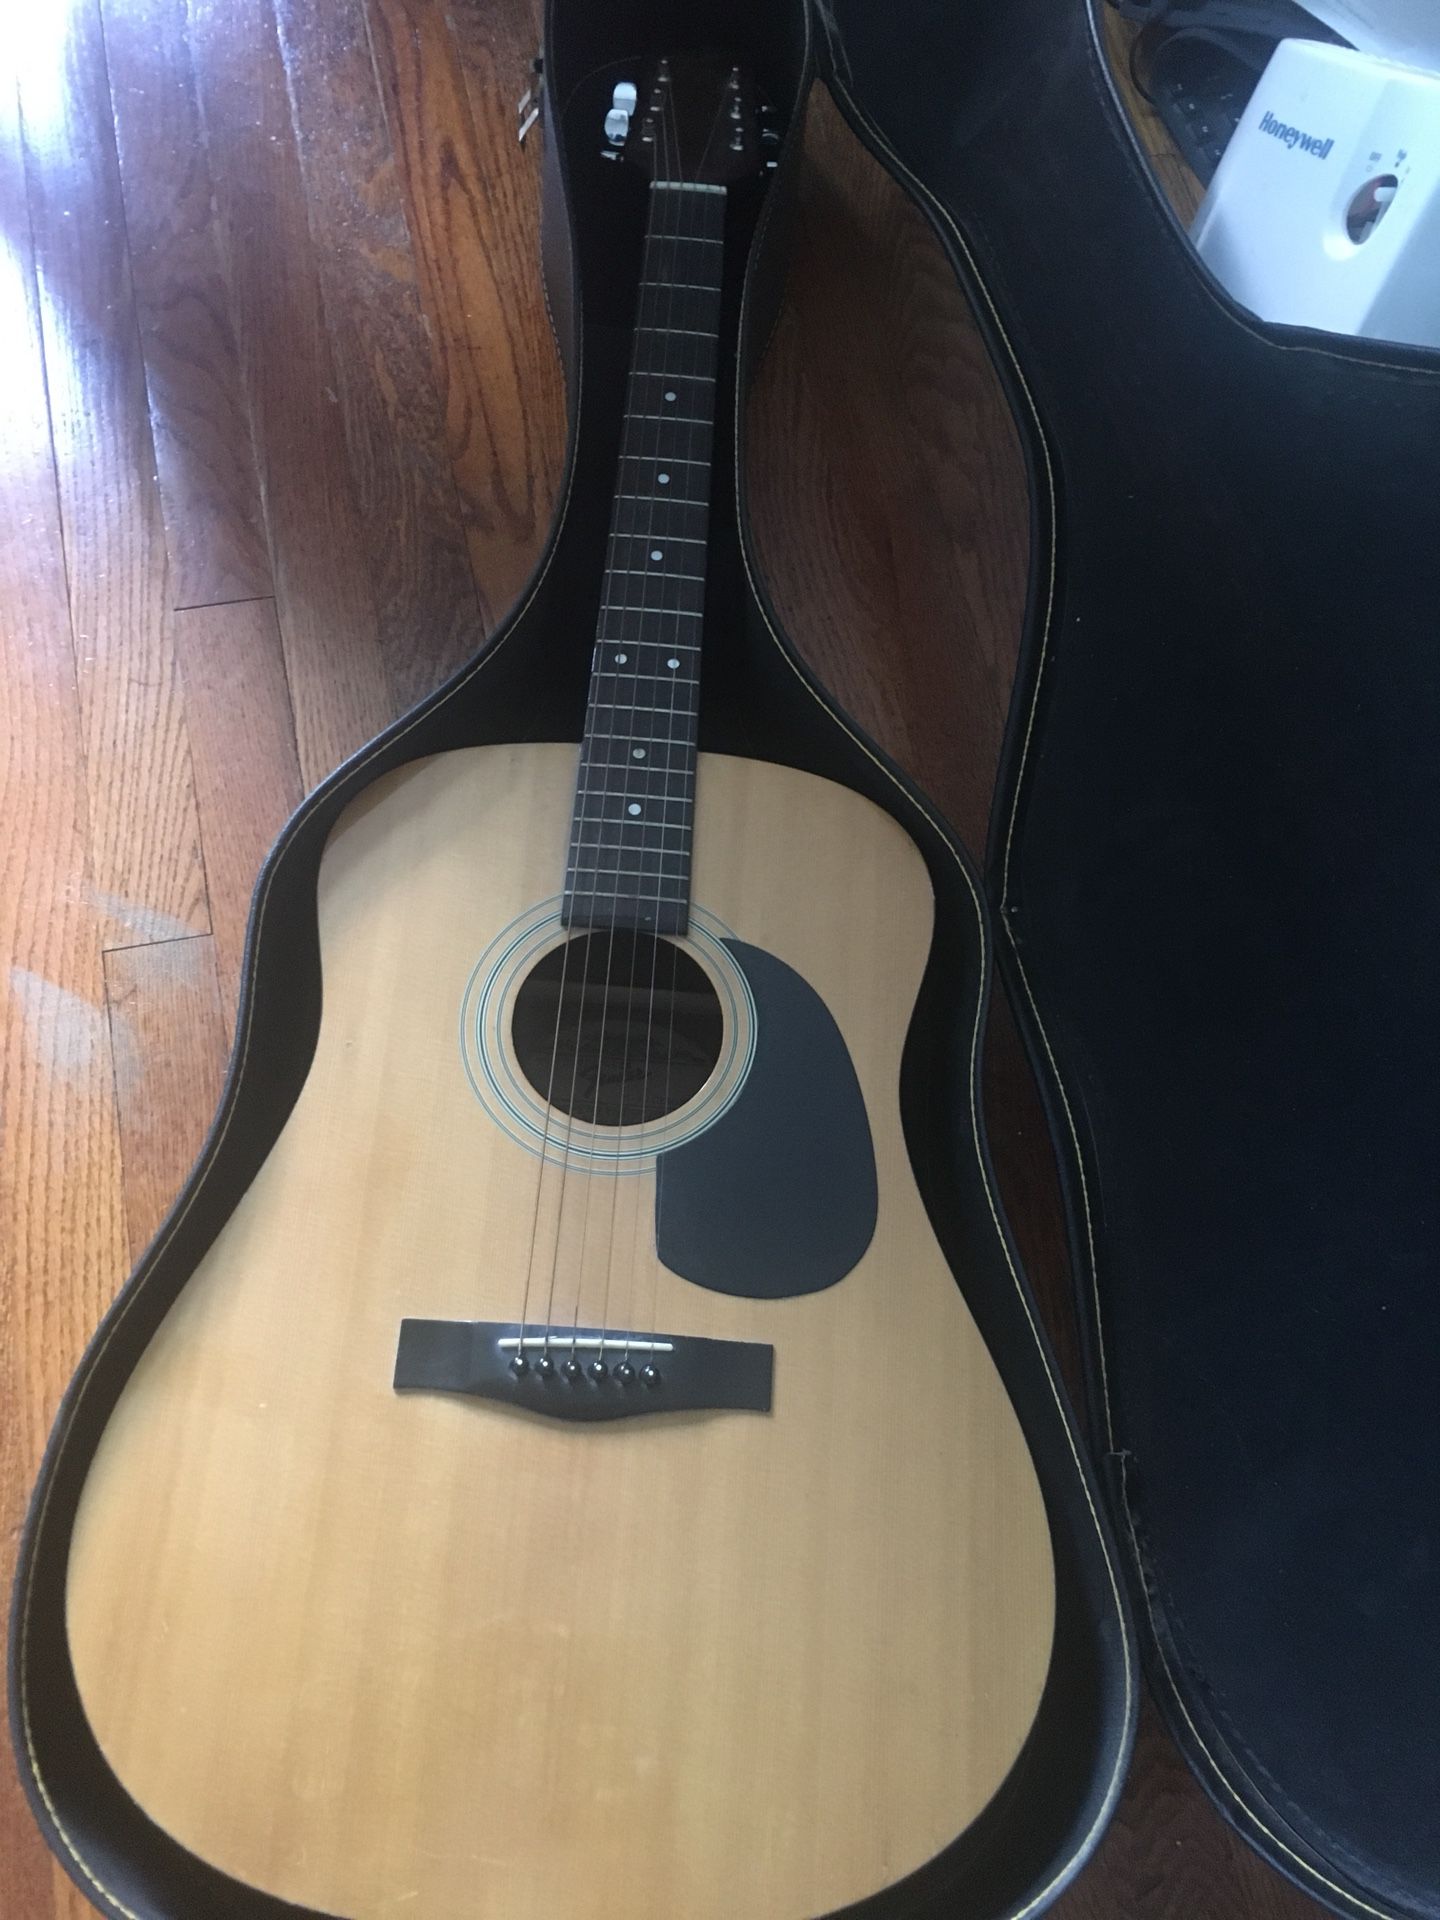 100$ Fender guitar